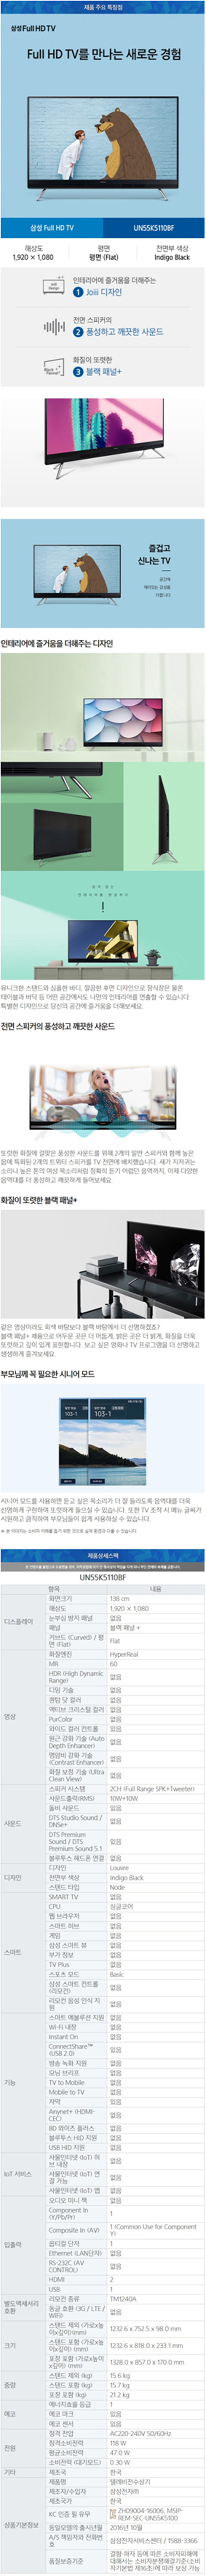 용산케이블 - 삼성 55인치 LED TV (UN55K5110BF) 상세보기